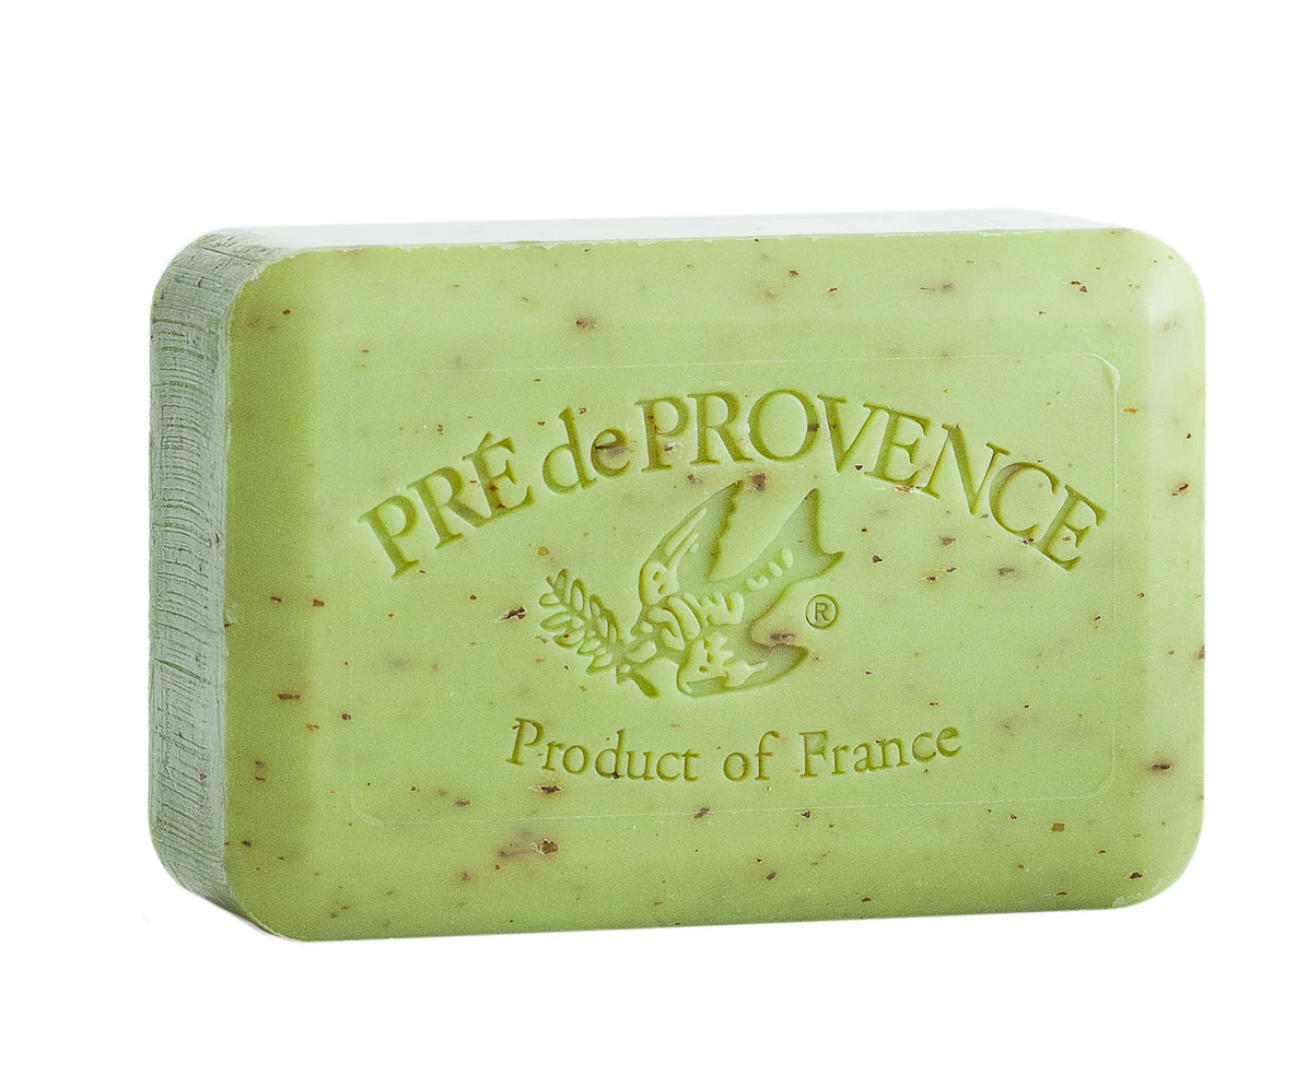 Lime Zest soap bar by Pré de Provence